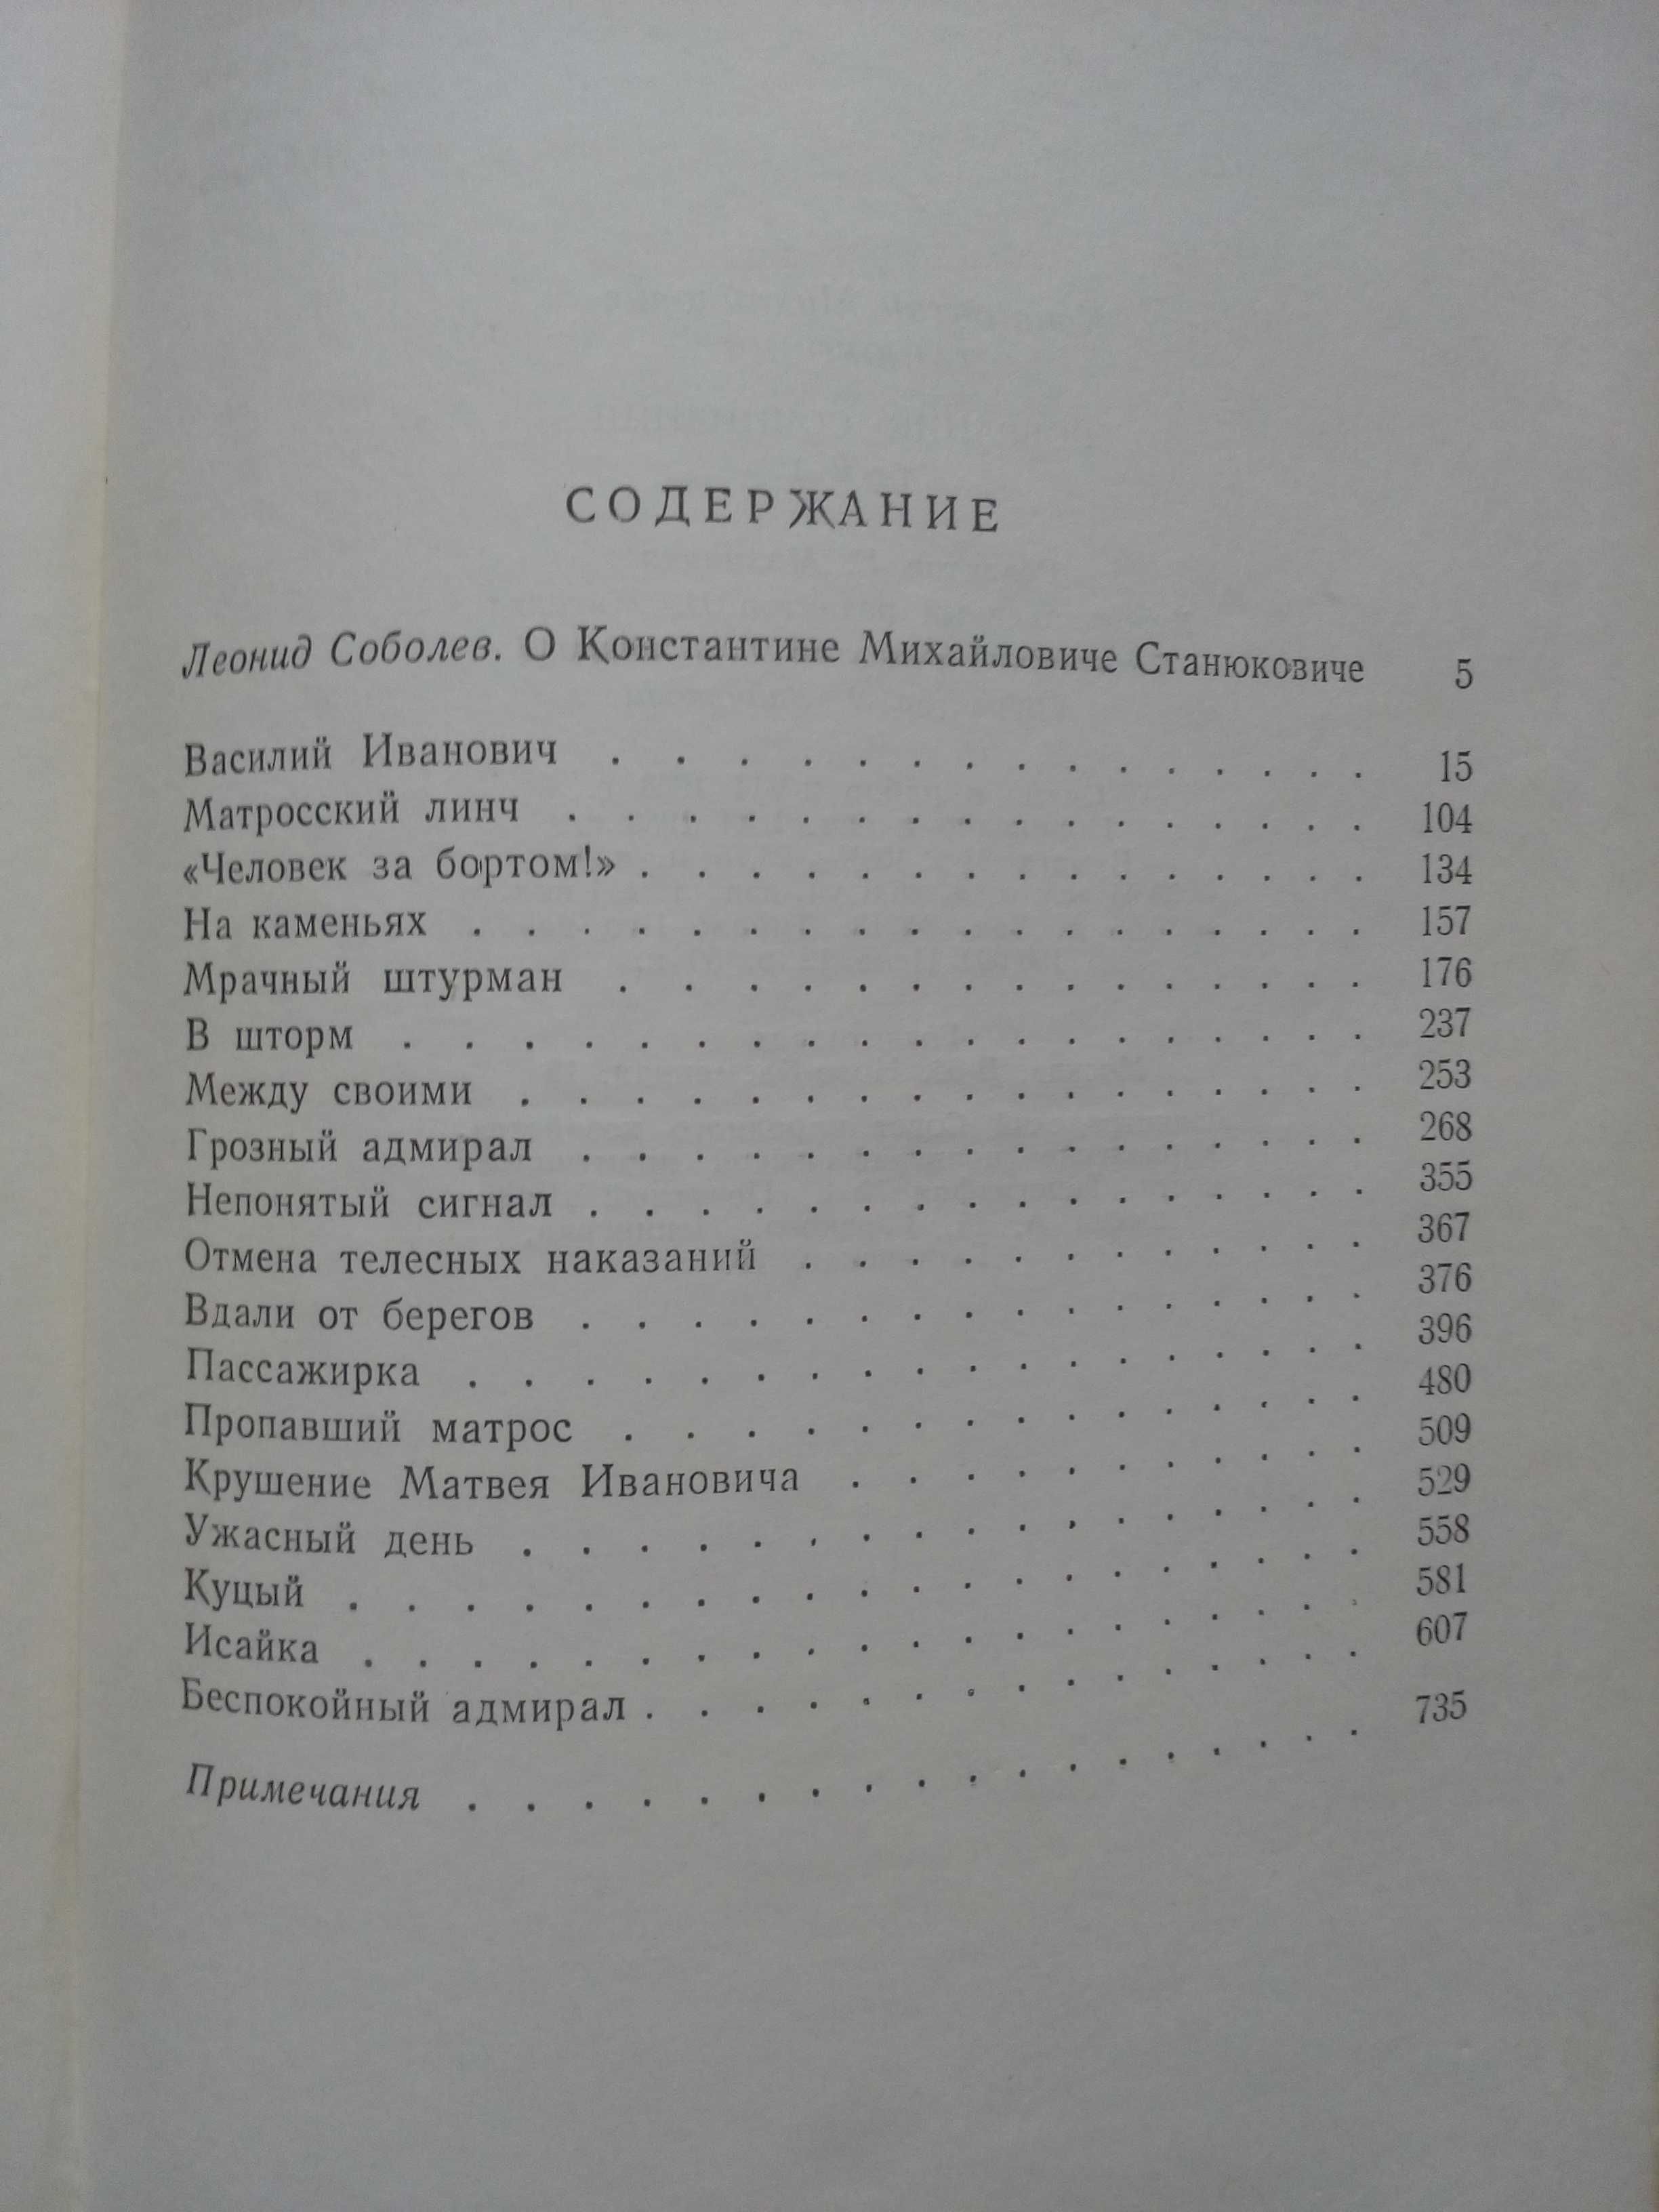 Станюкович"Собрание сочинений в 6-и томах".1958-1959 гг.